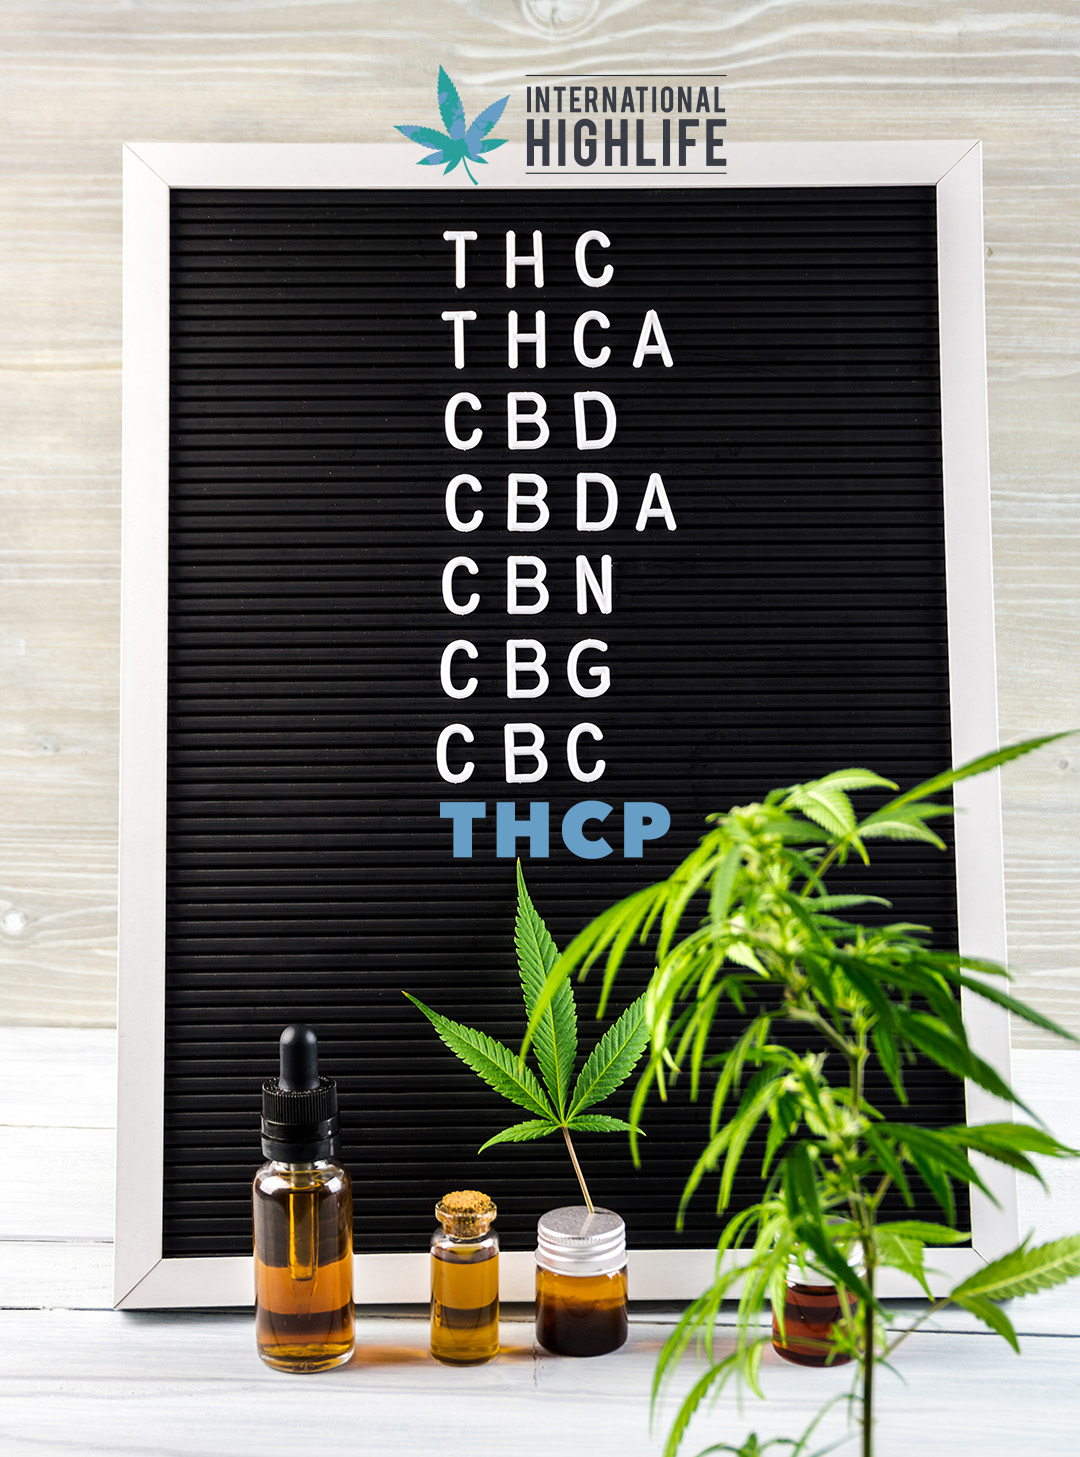 THCP Cannabinoid explained